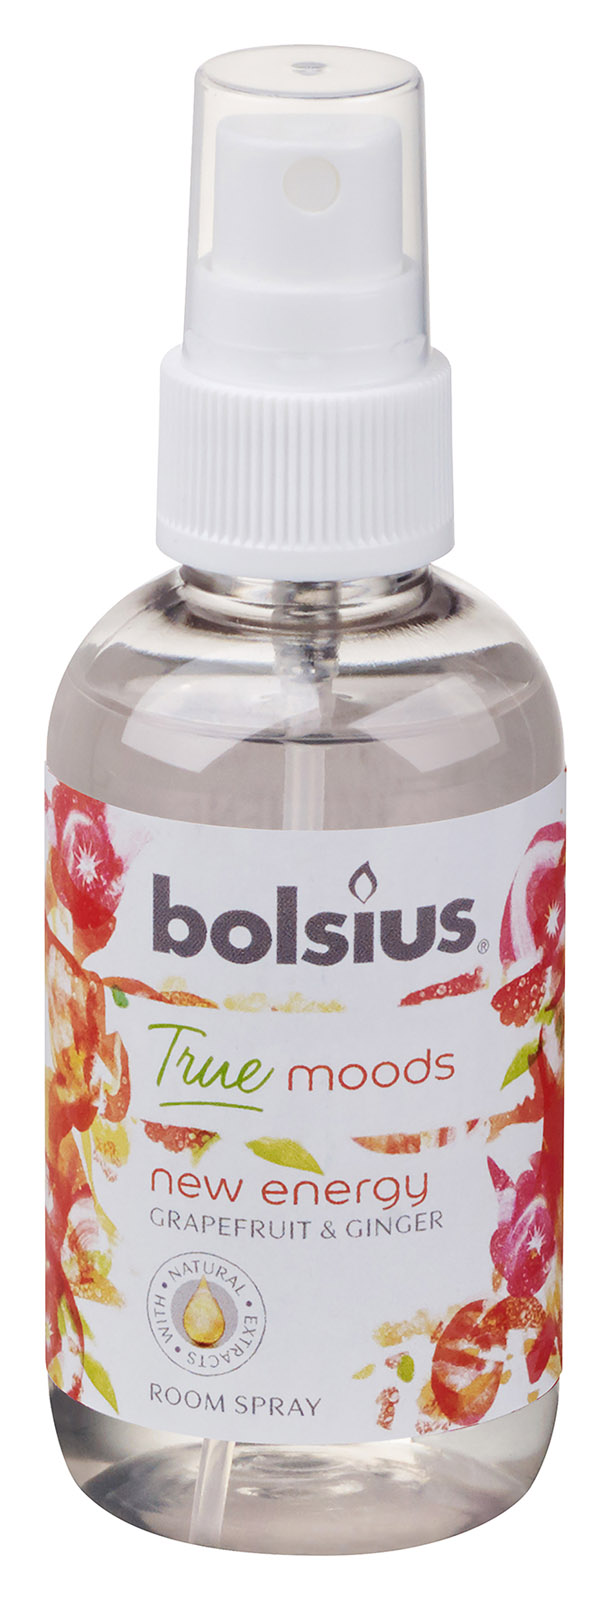 Bolsius True Moods, New Energy spray do pomieszczeń 75ml